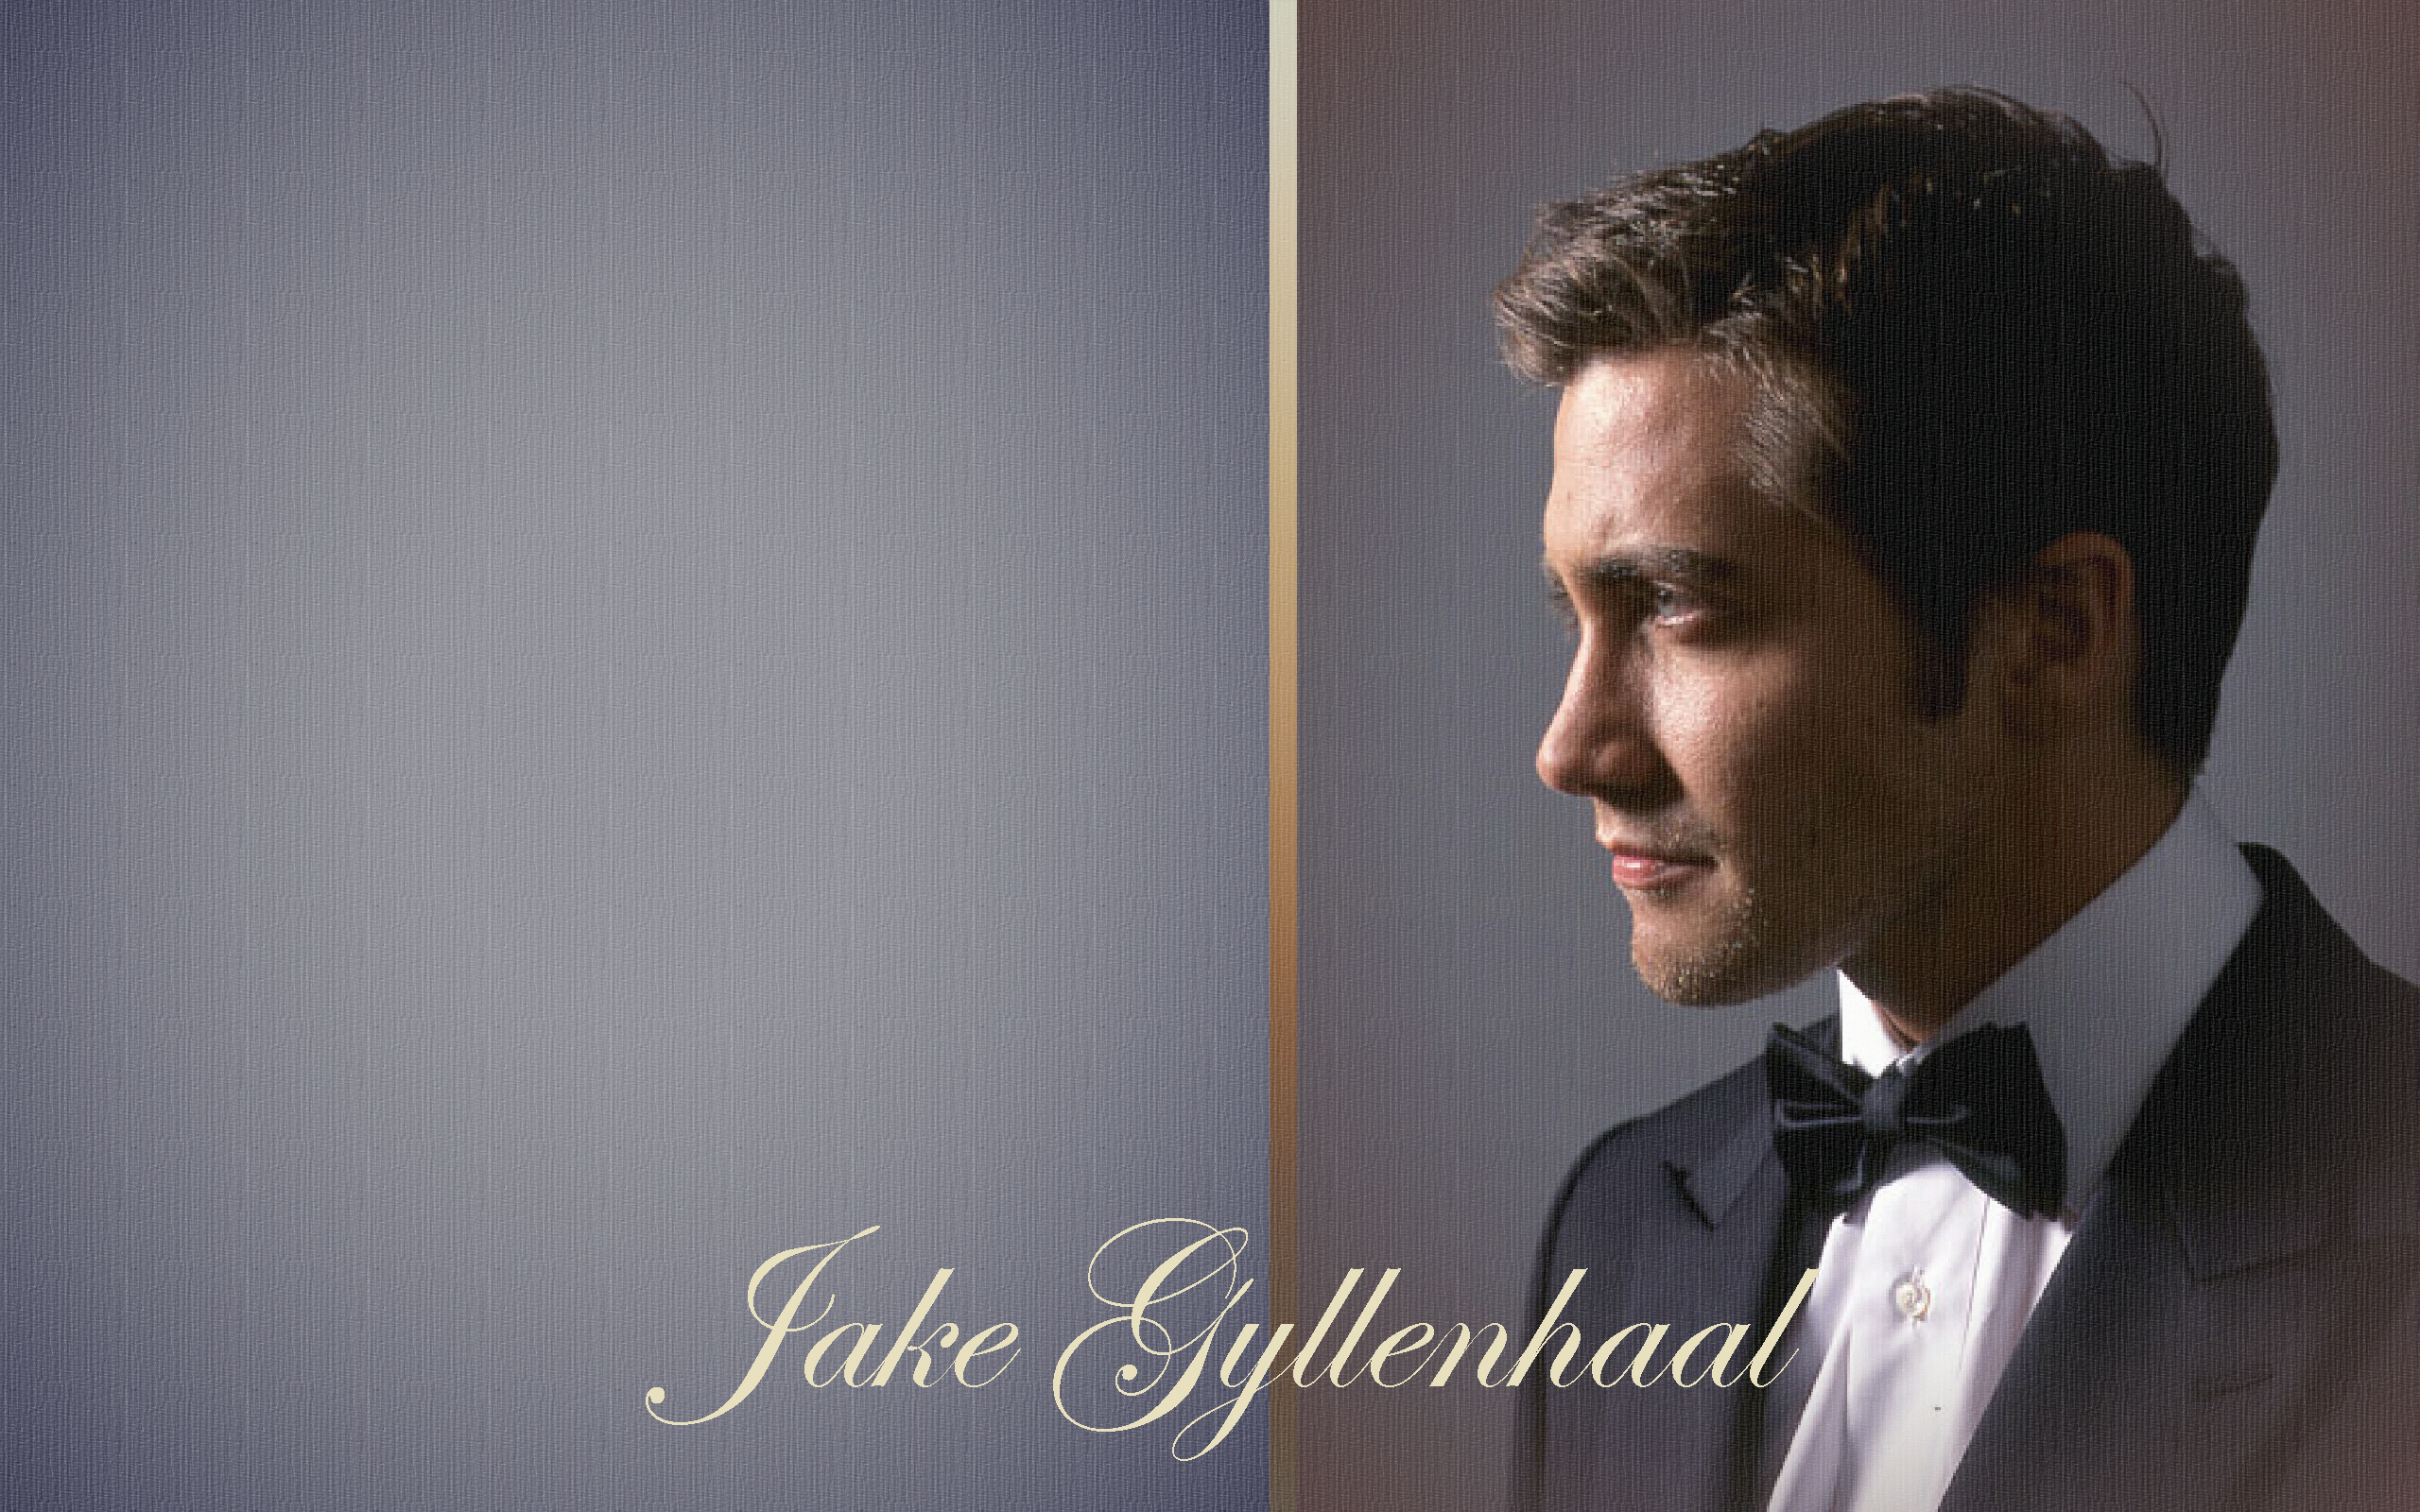 Jake Gyllenhaal in Fan Creations